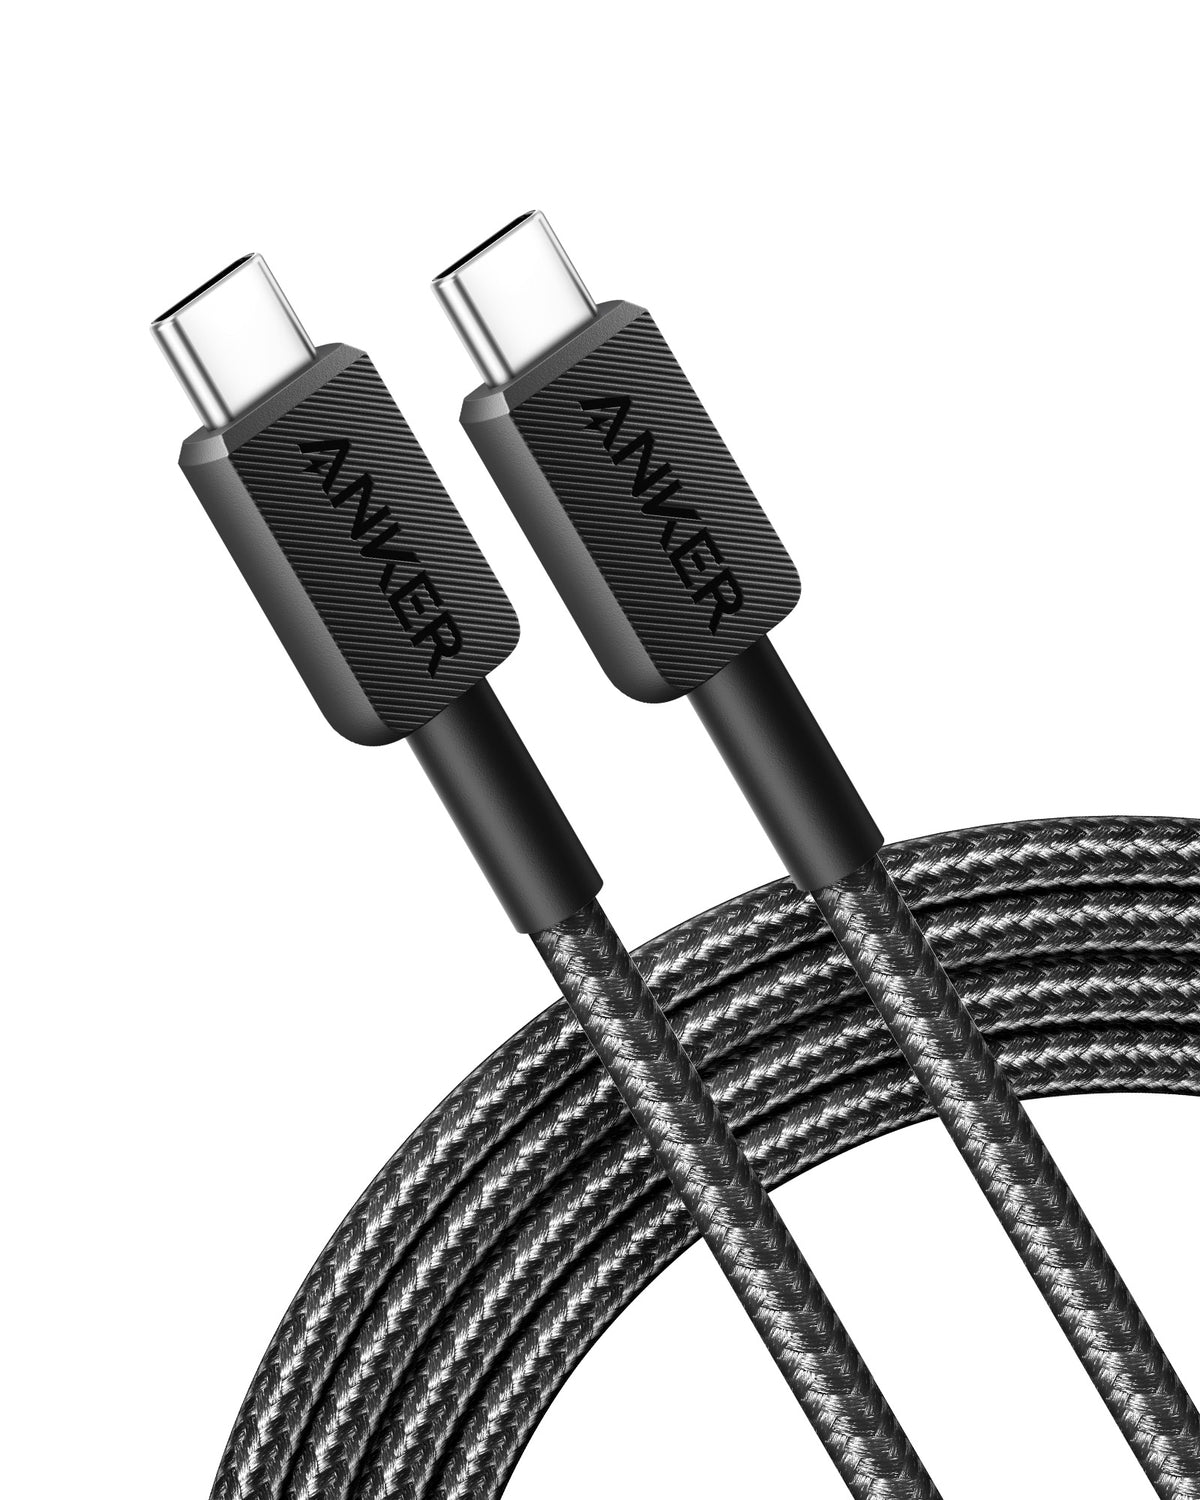 Anker &lt;b&gt;322&lt;/b&gt; USB-C to USB-C Cable